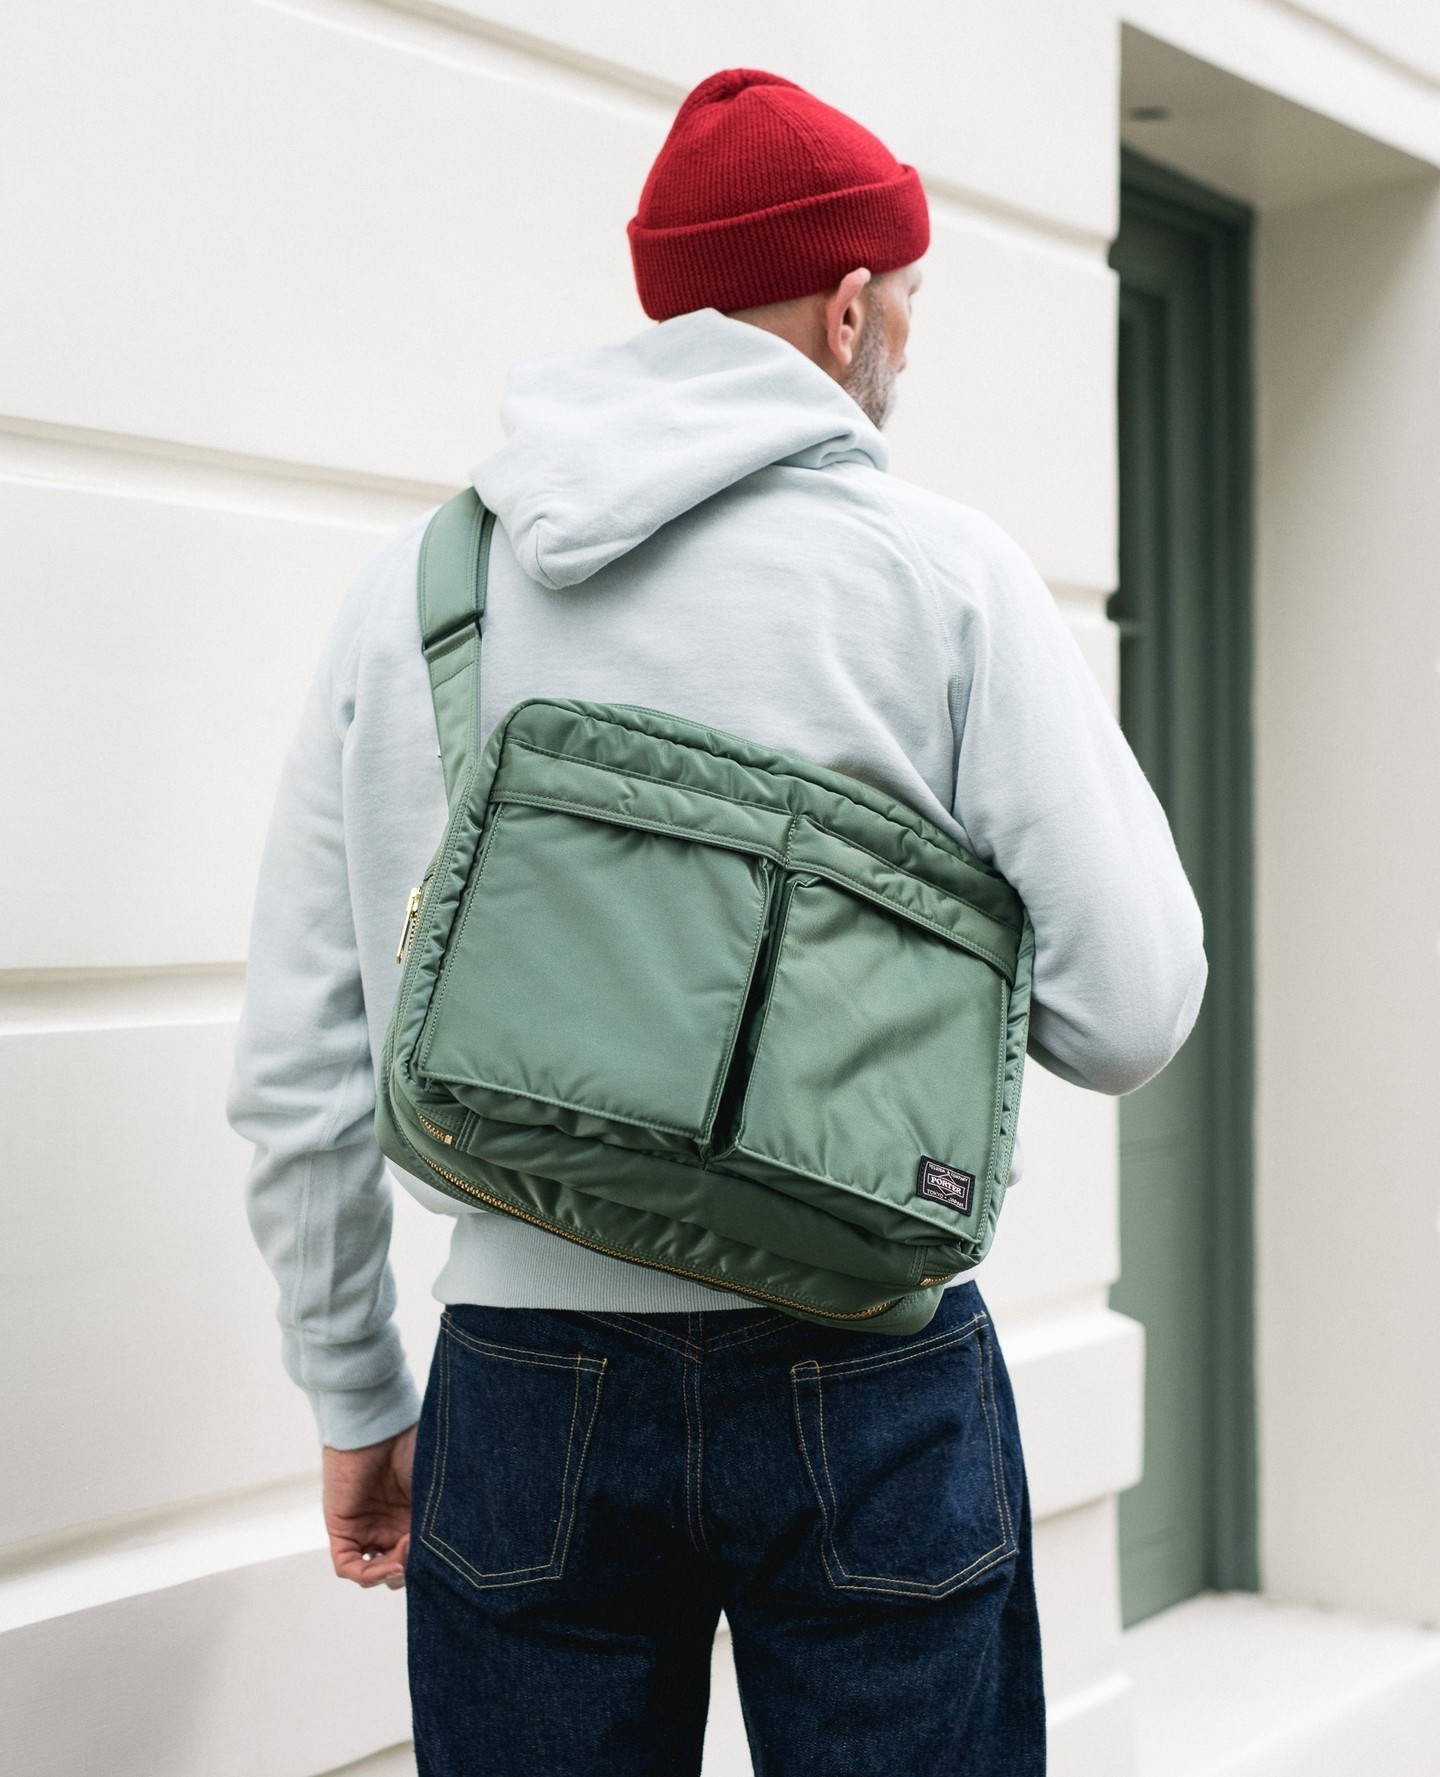 Porter-Yoshida and Co Tanker Large Shoulder Bag Sage Green for Men